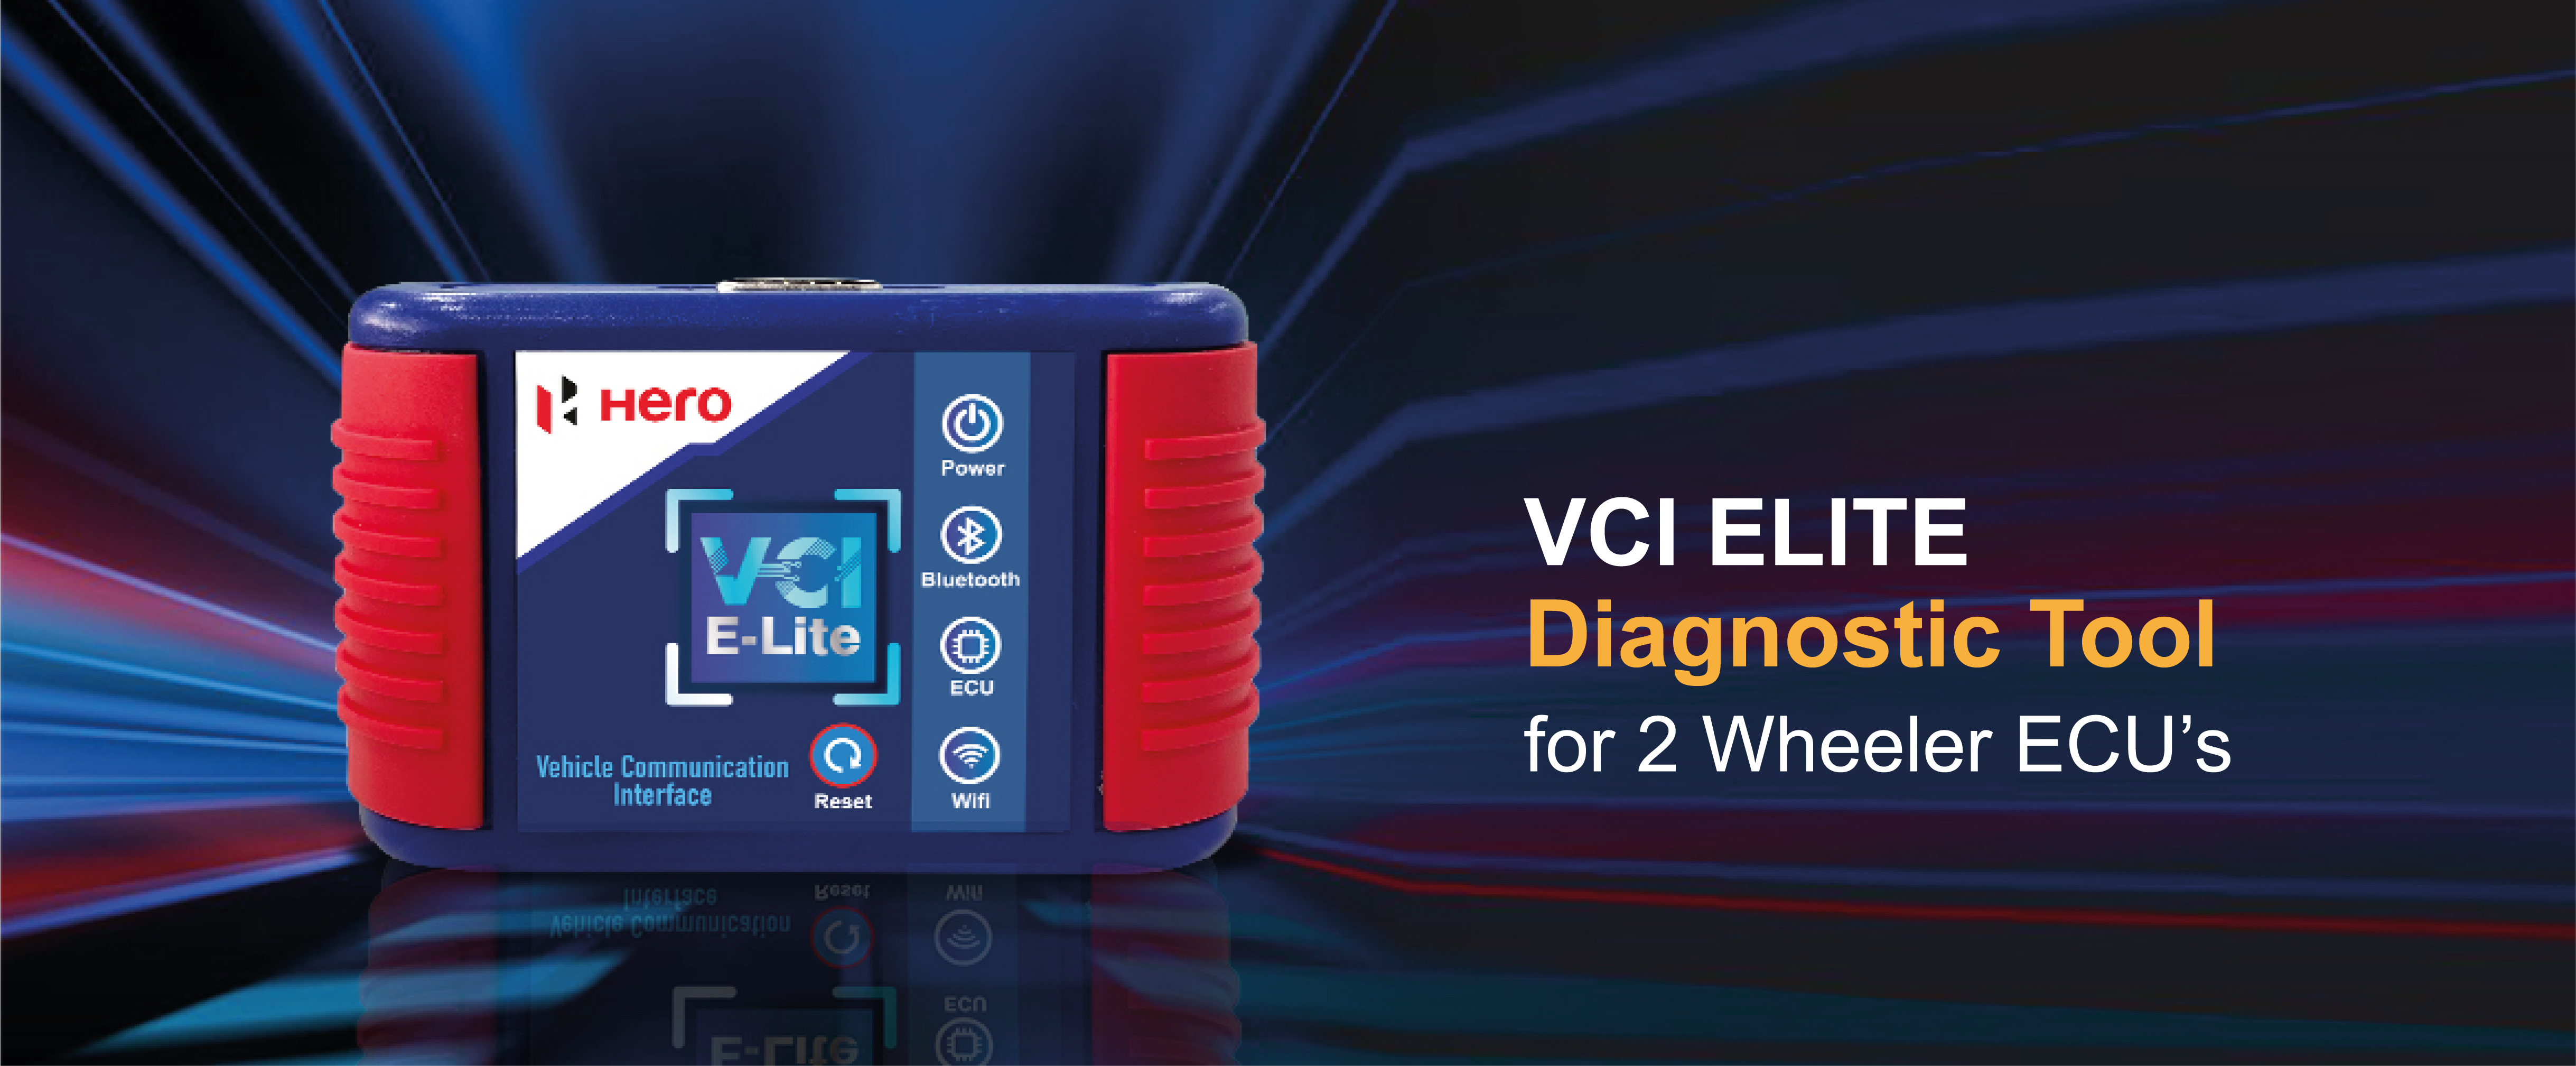 Hero VCI E-lite
                  Diagnostic Tool for Electric 2 wheeler ECU’s